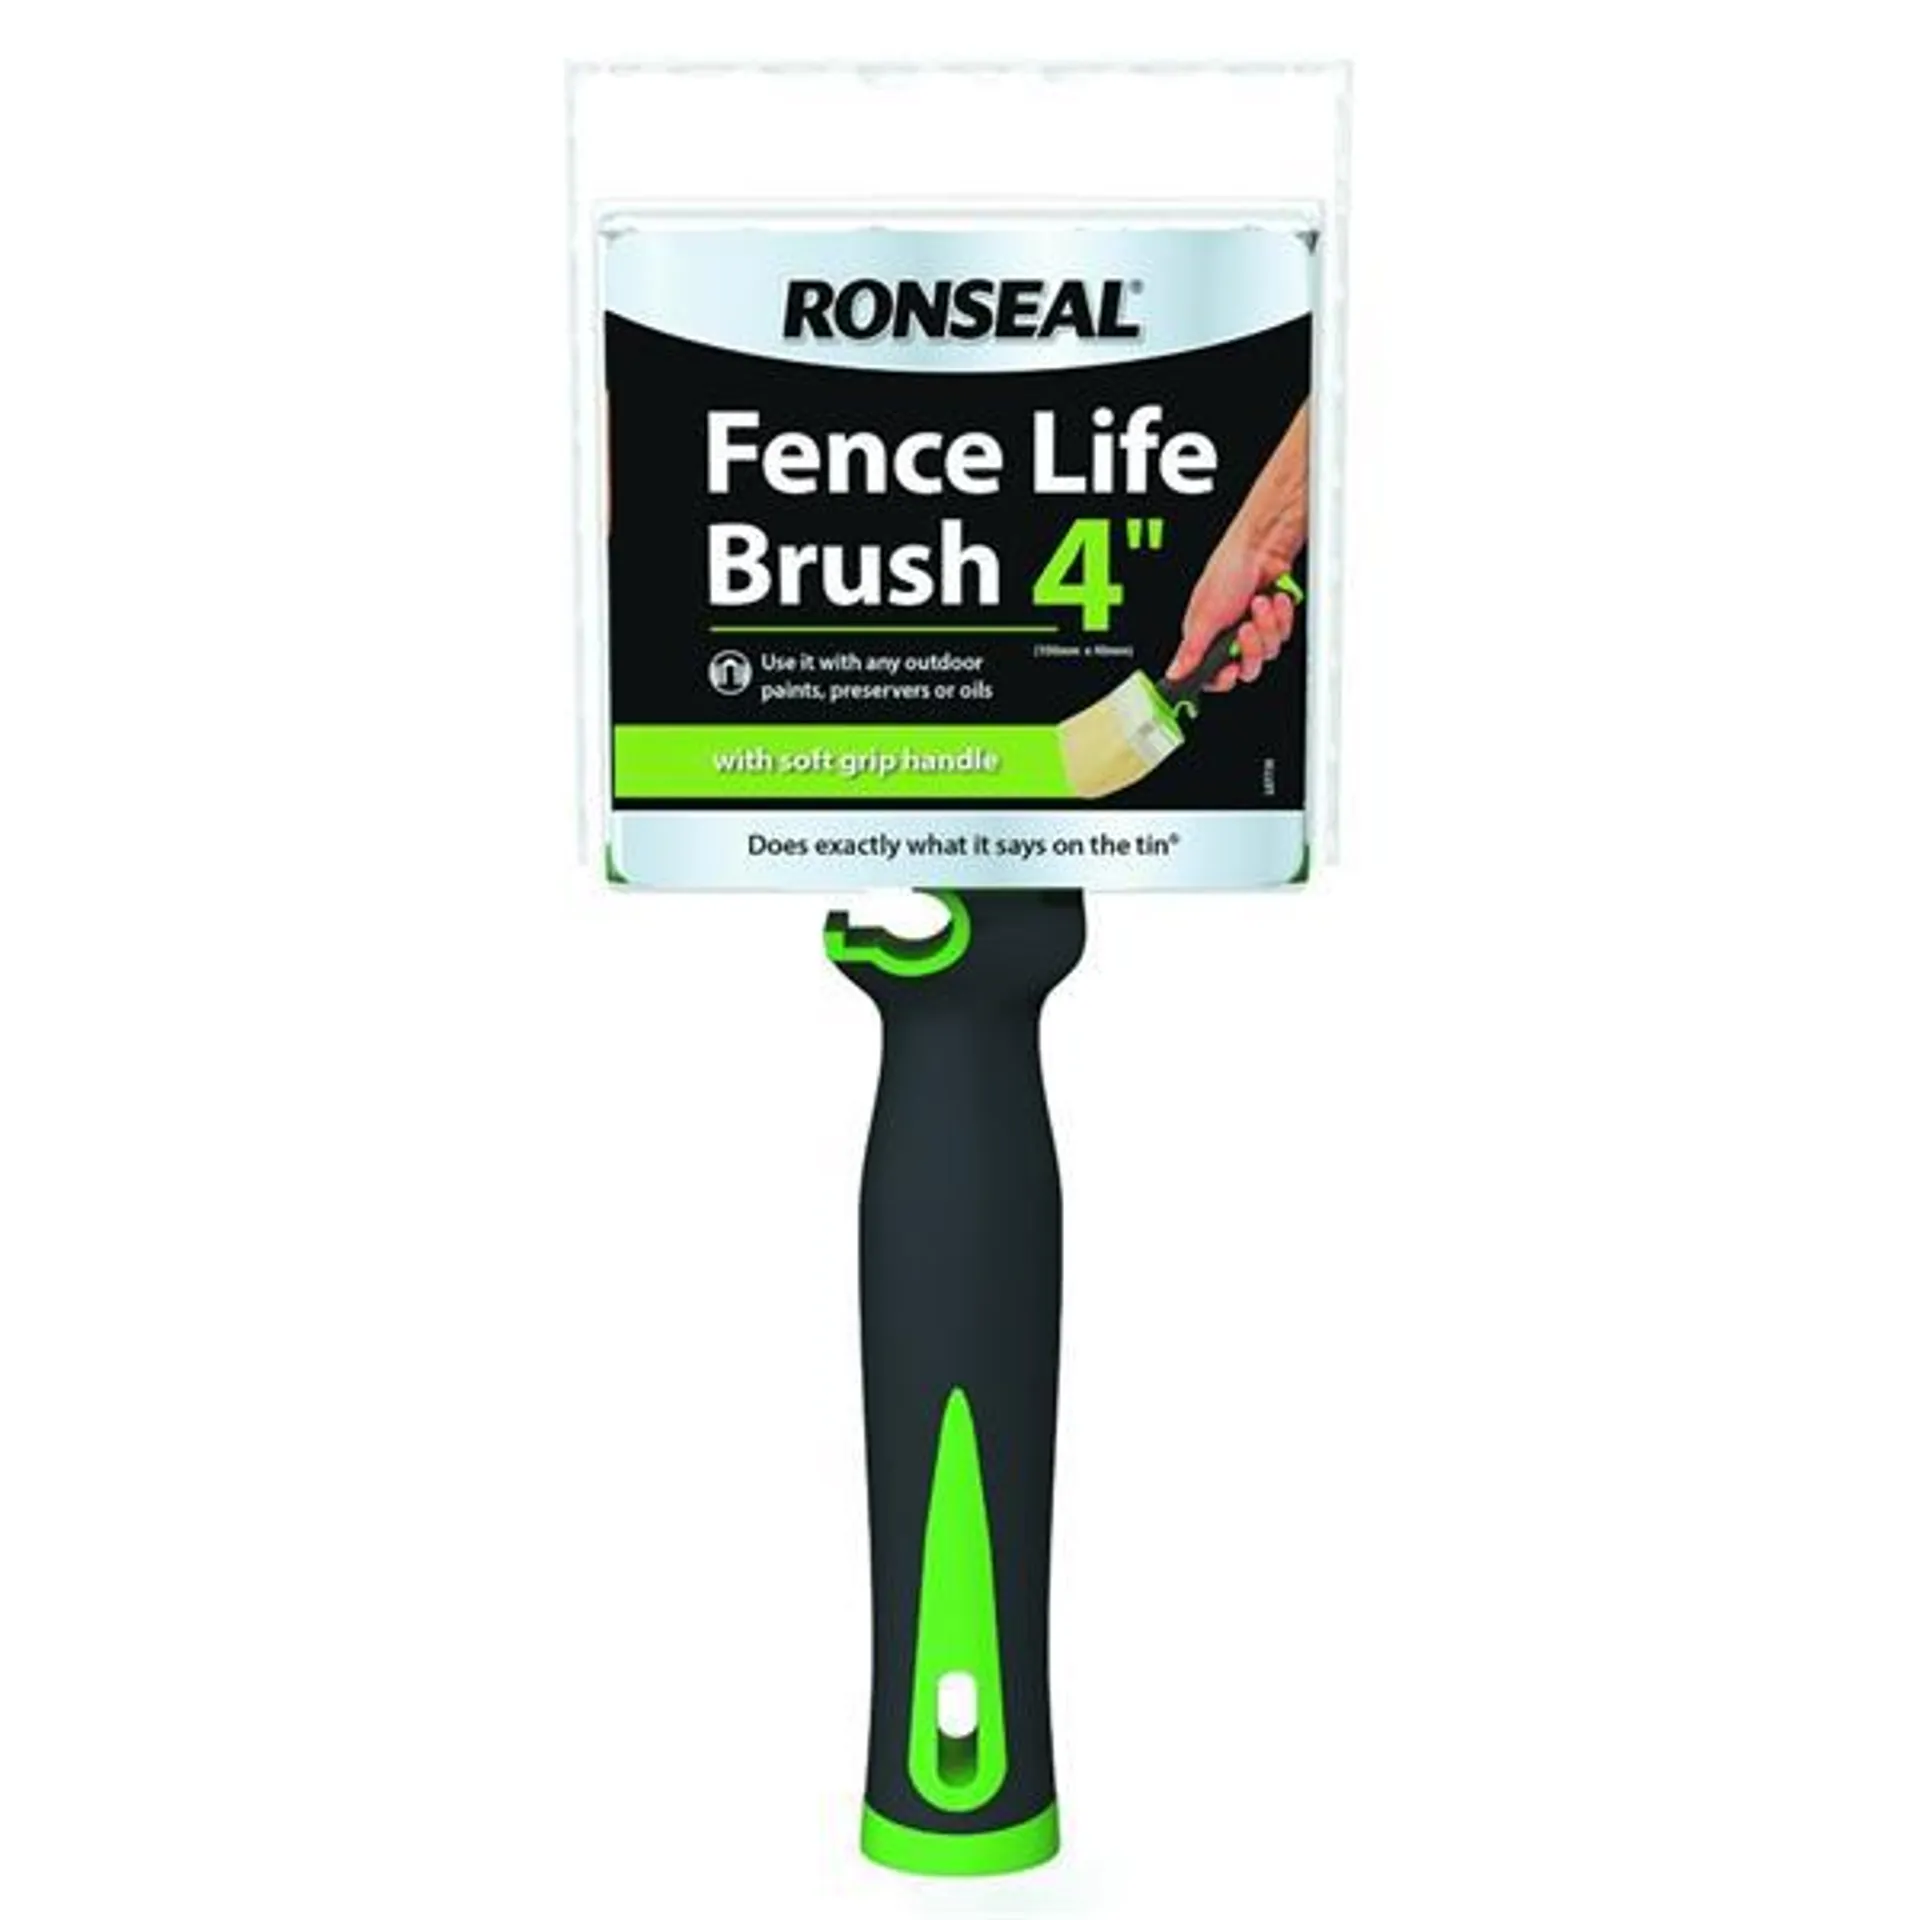 4" Fence Brush